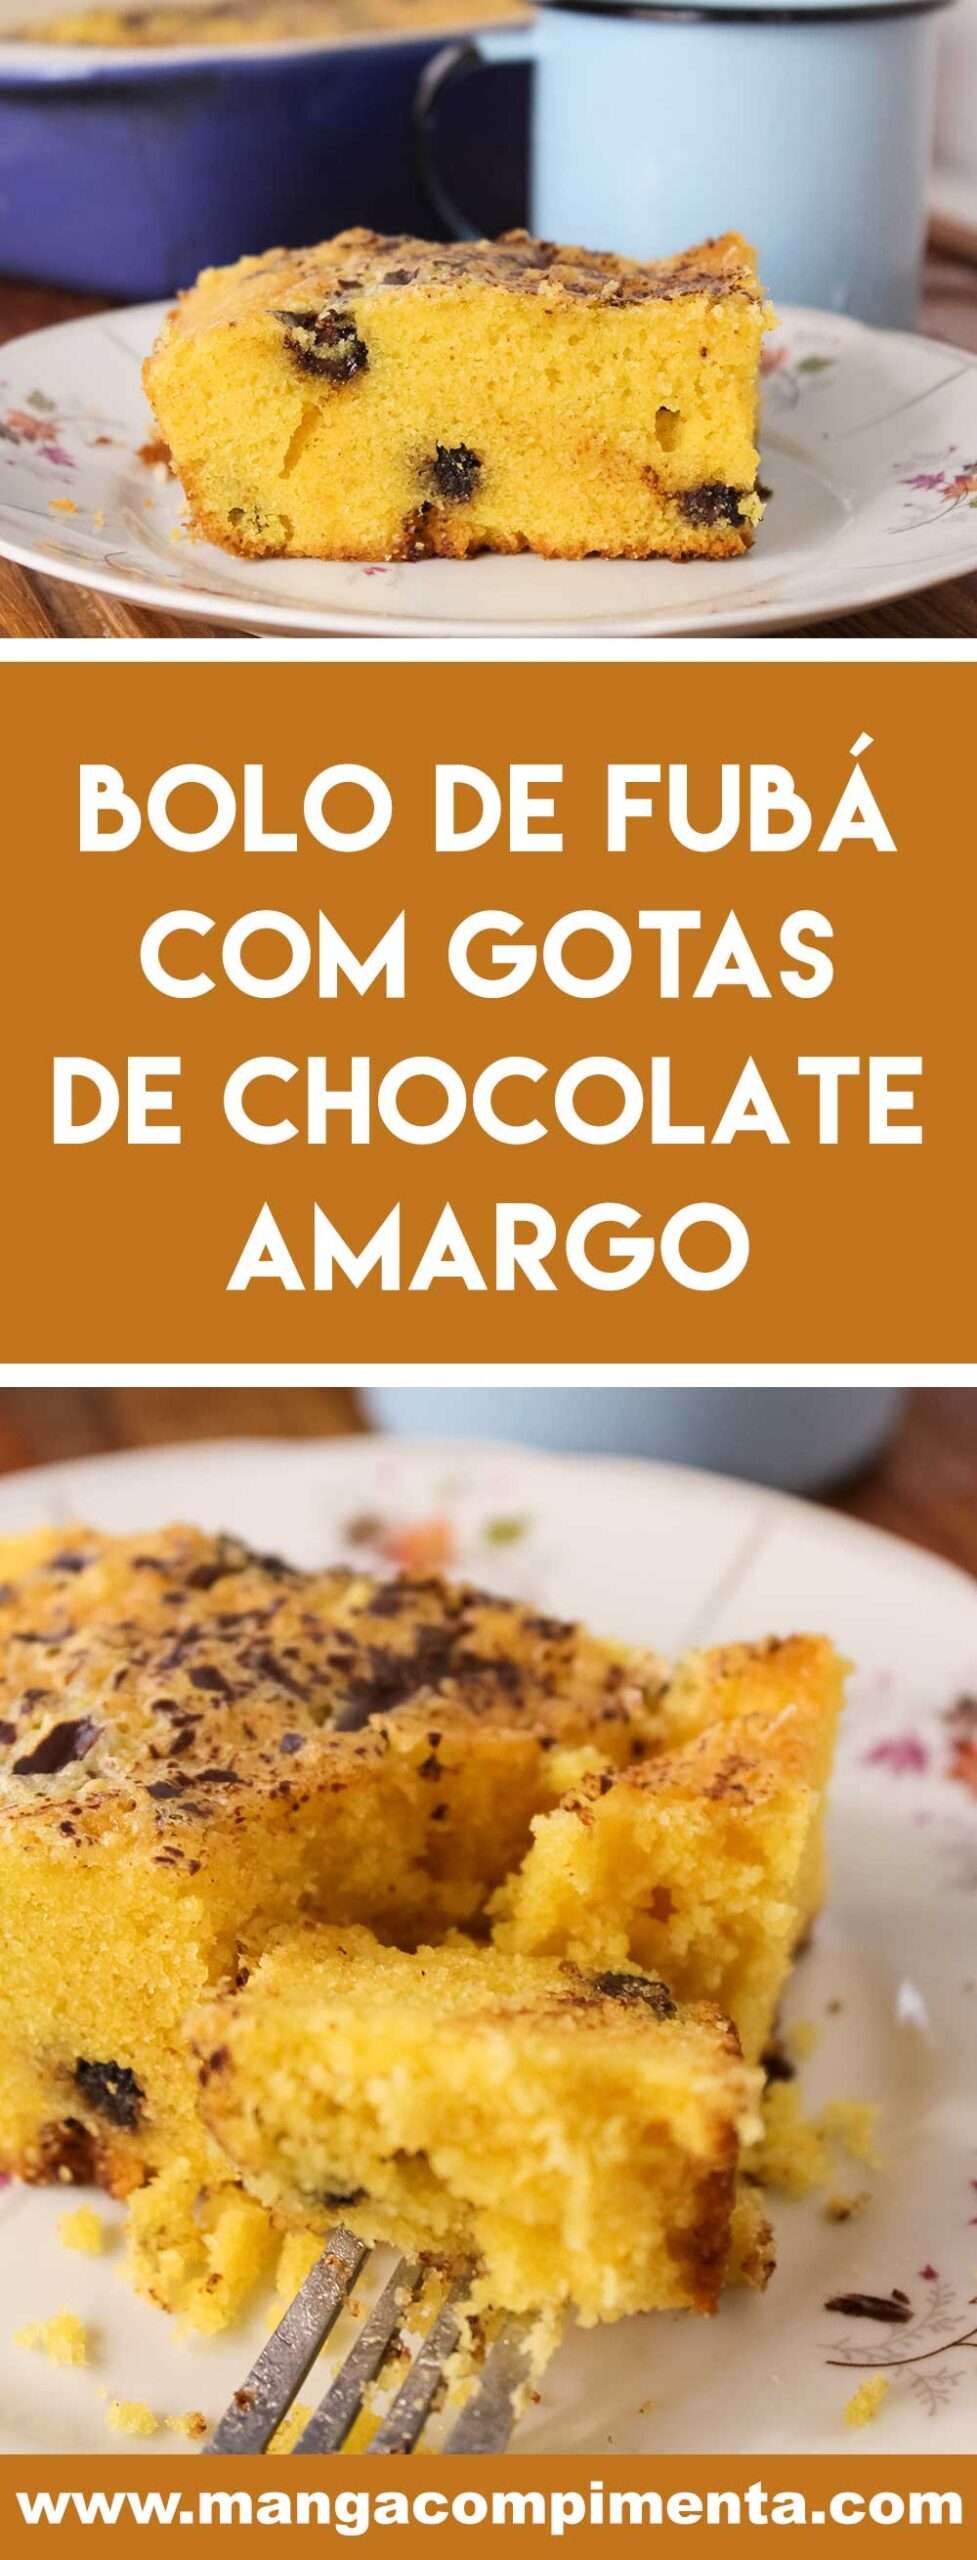 Receita de Bolo de Fubá com Gotas de Chocolate Amargo - prepare um lanche delicioso para o chá da tarde.